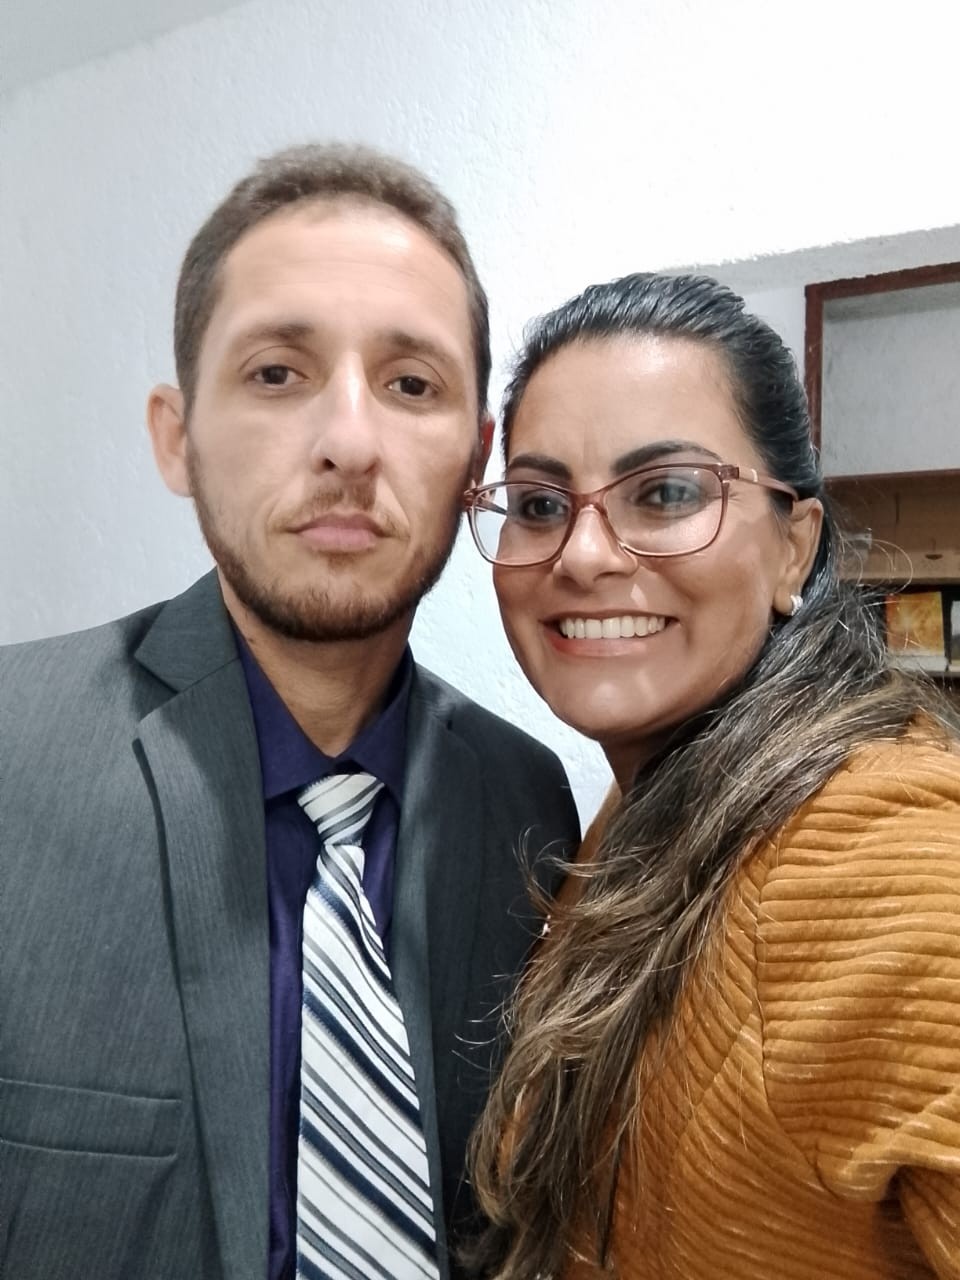 Família alega negligência médica após morte por dengue em Teresópolis, no RJ